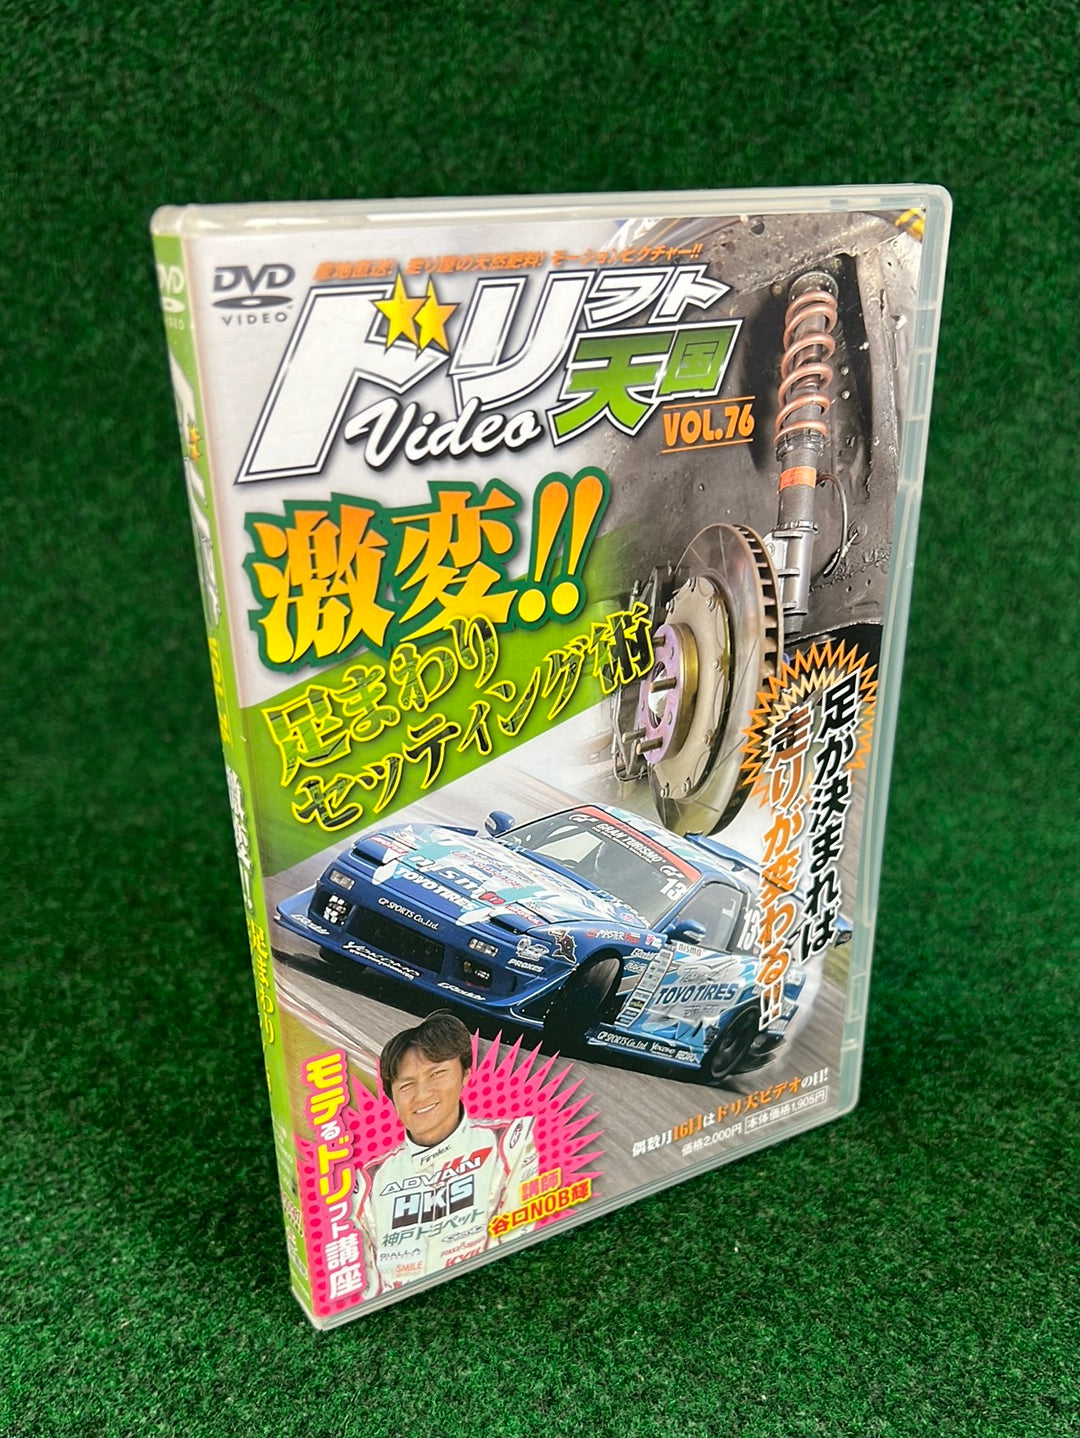 Drift Tengoku DVD - Vol. 76